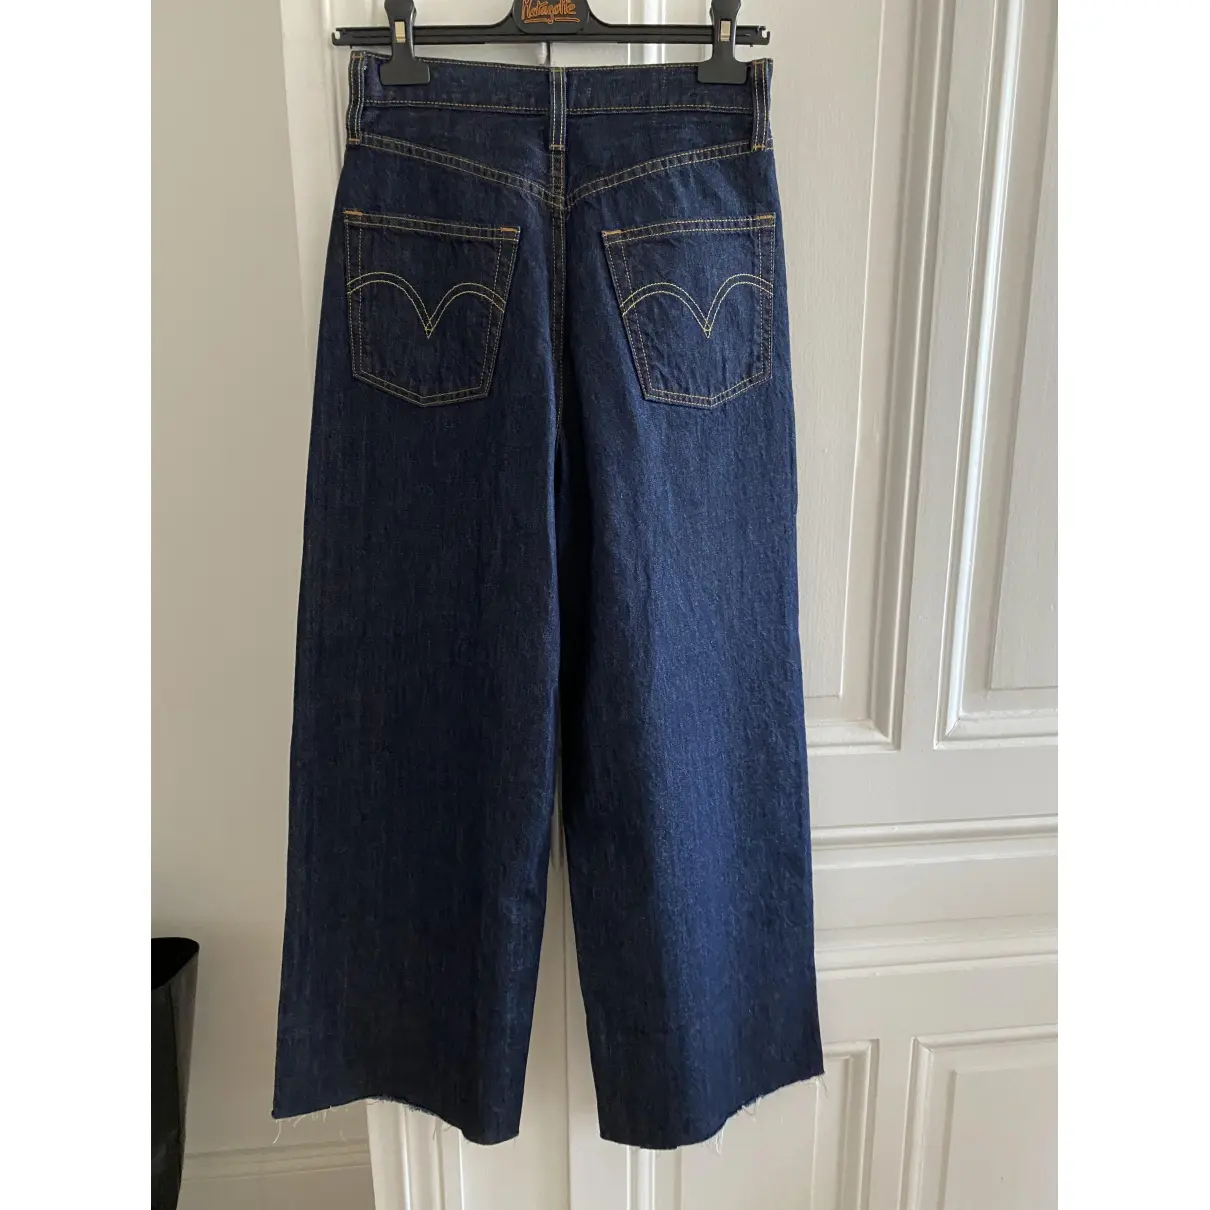 Buy Levi's Large jeans online